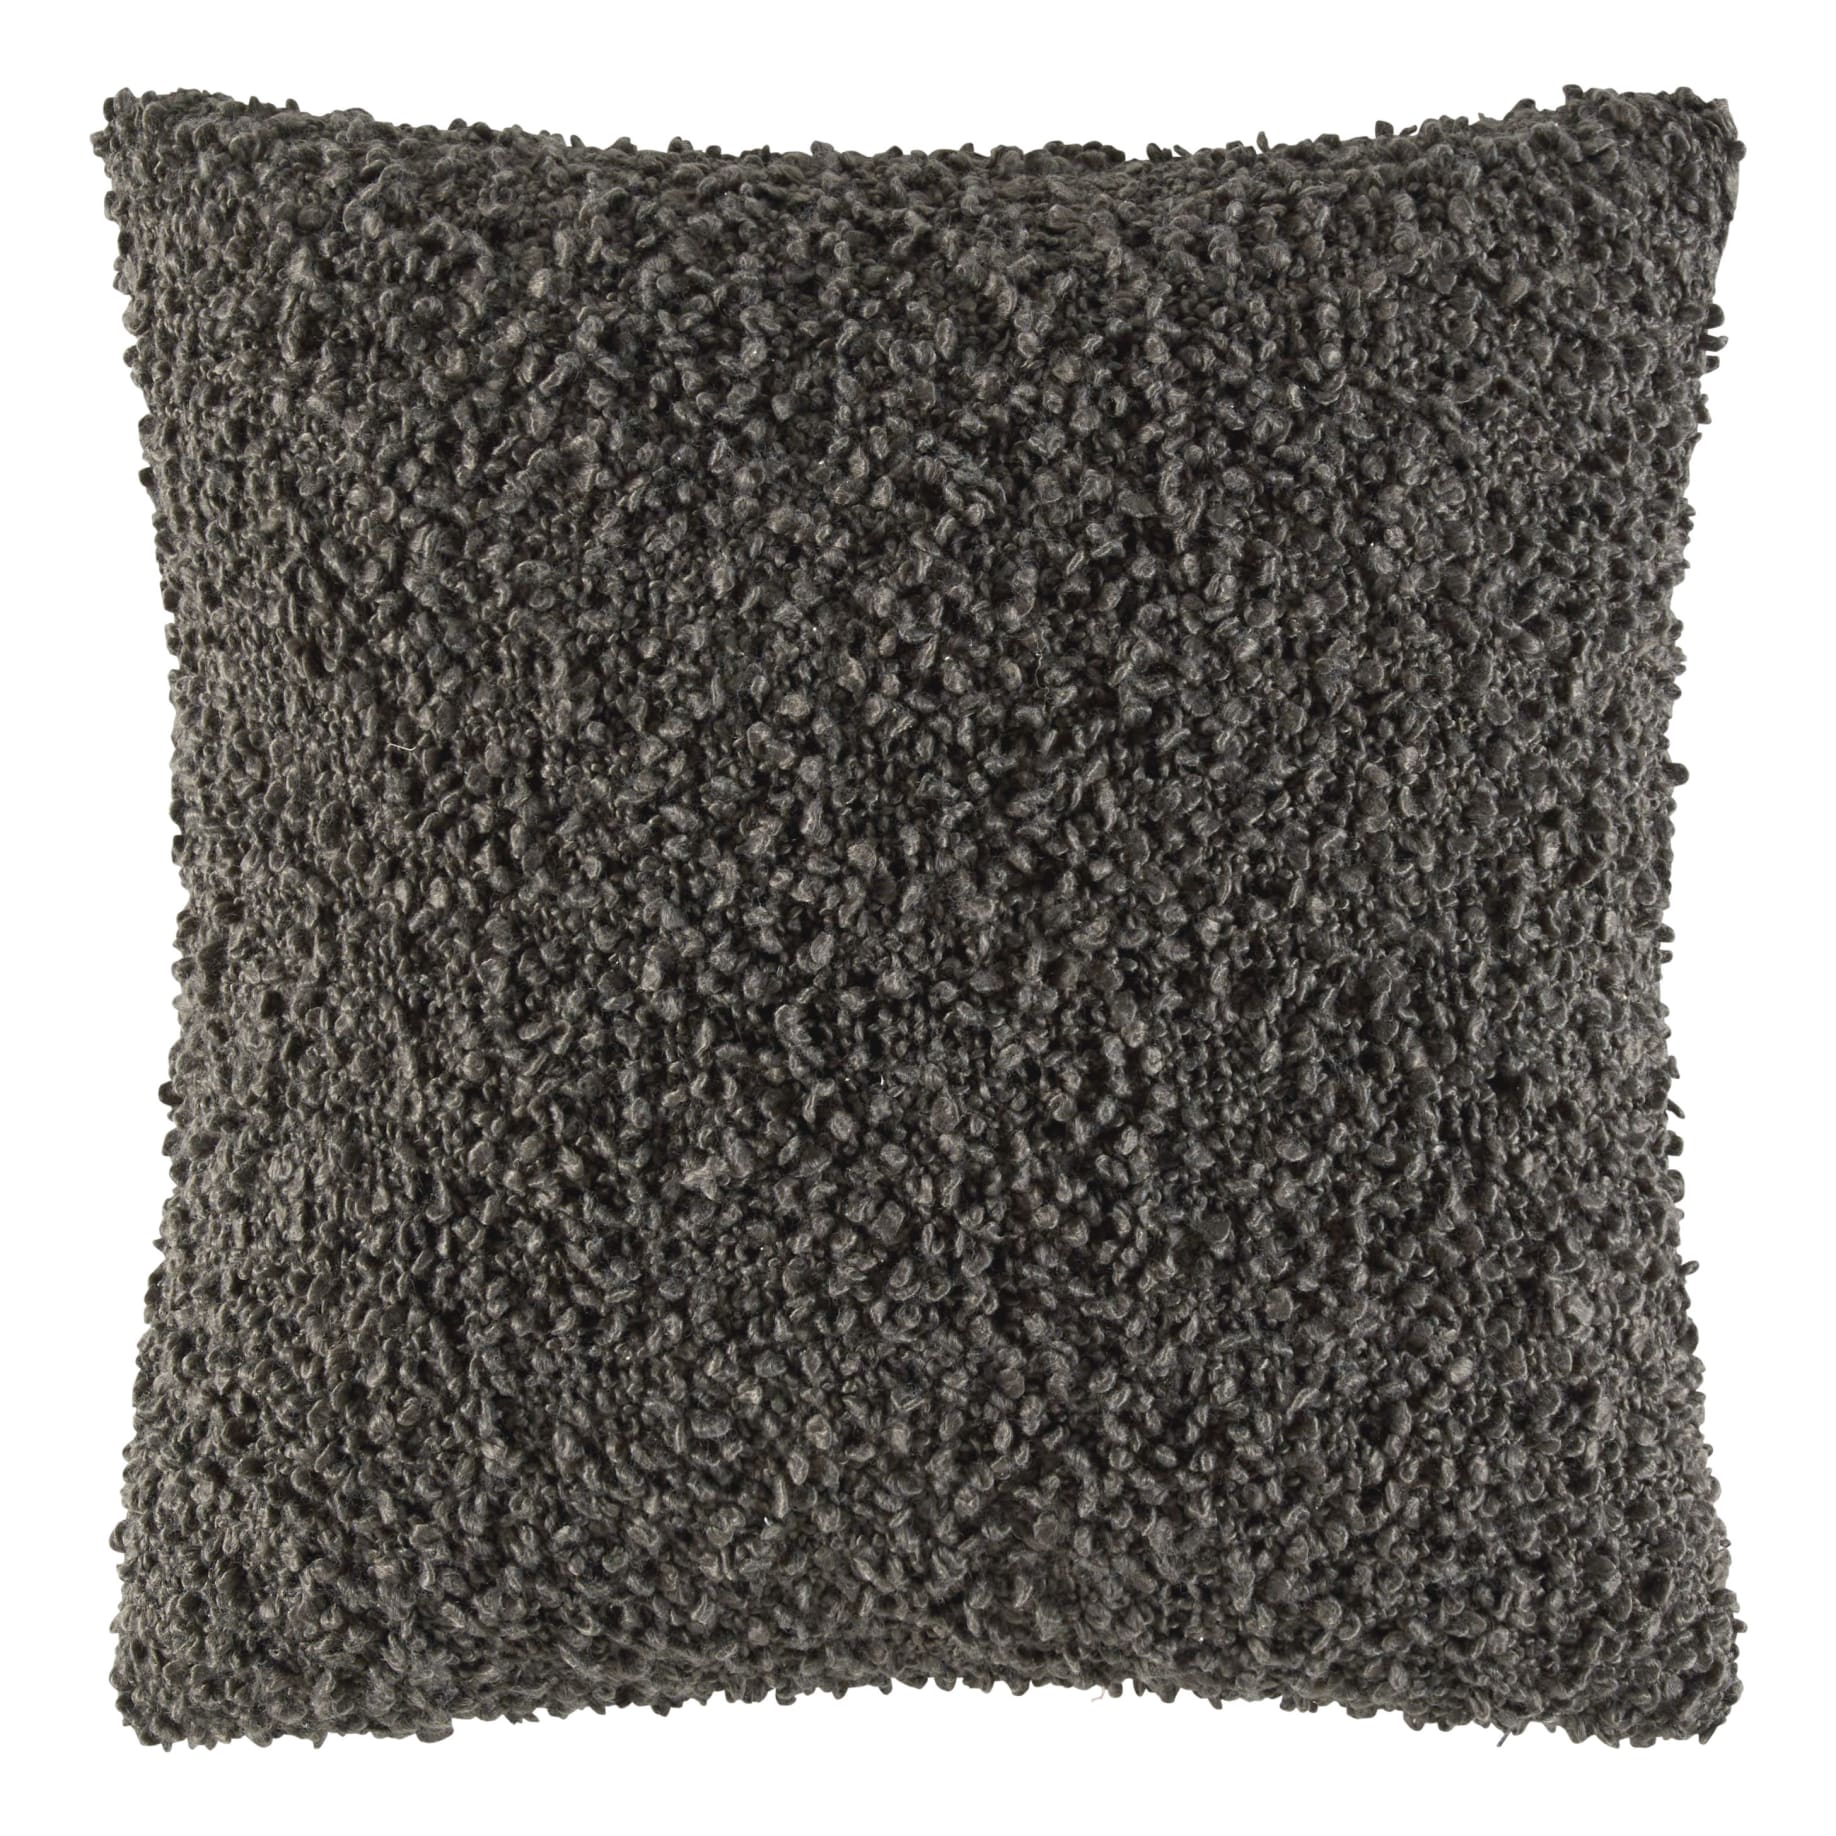 Rye Cushion 50x50cm in Charcoal